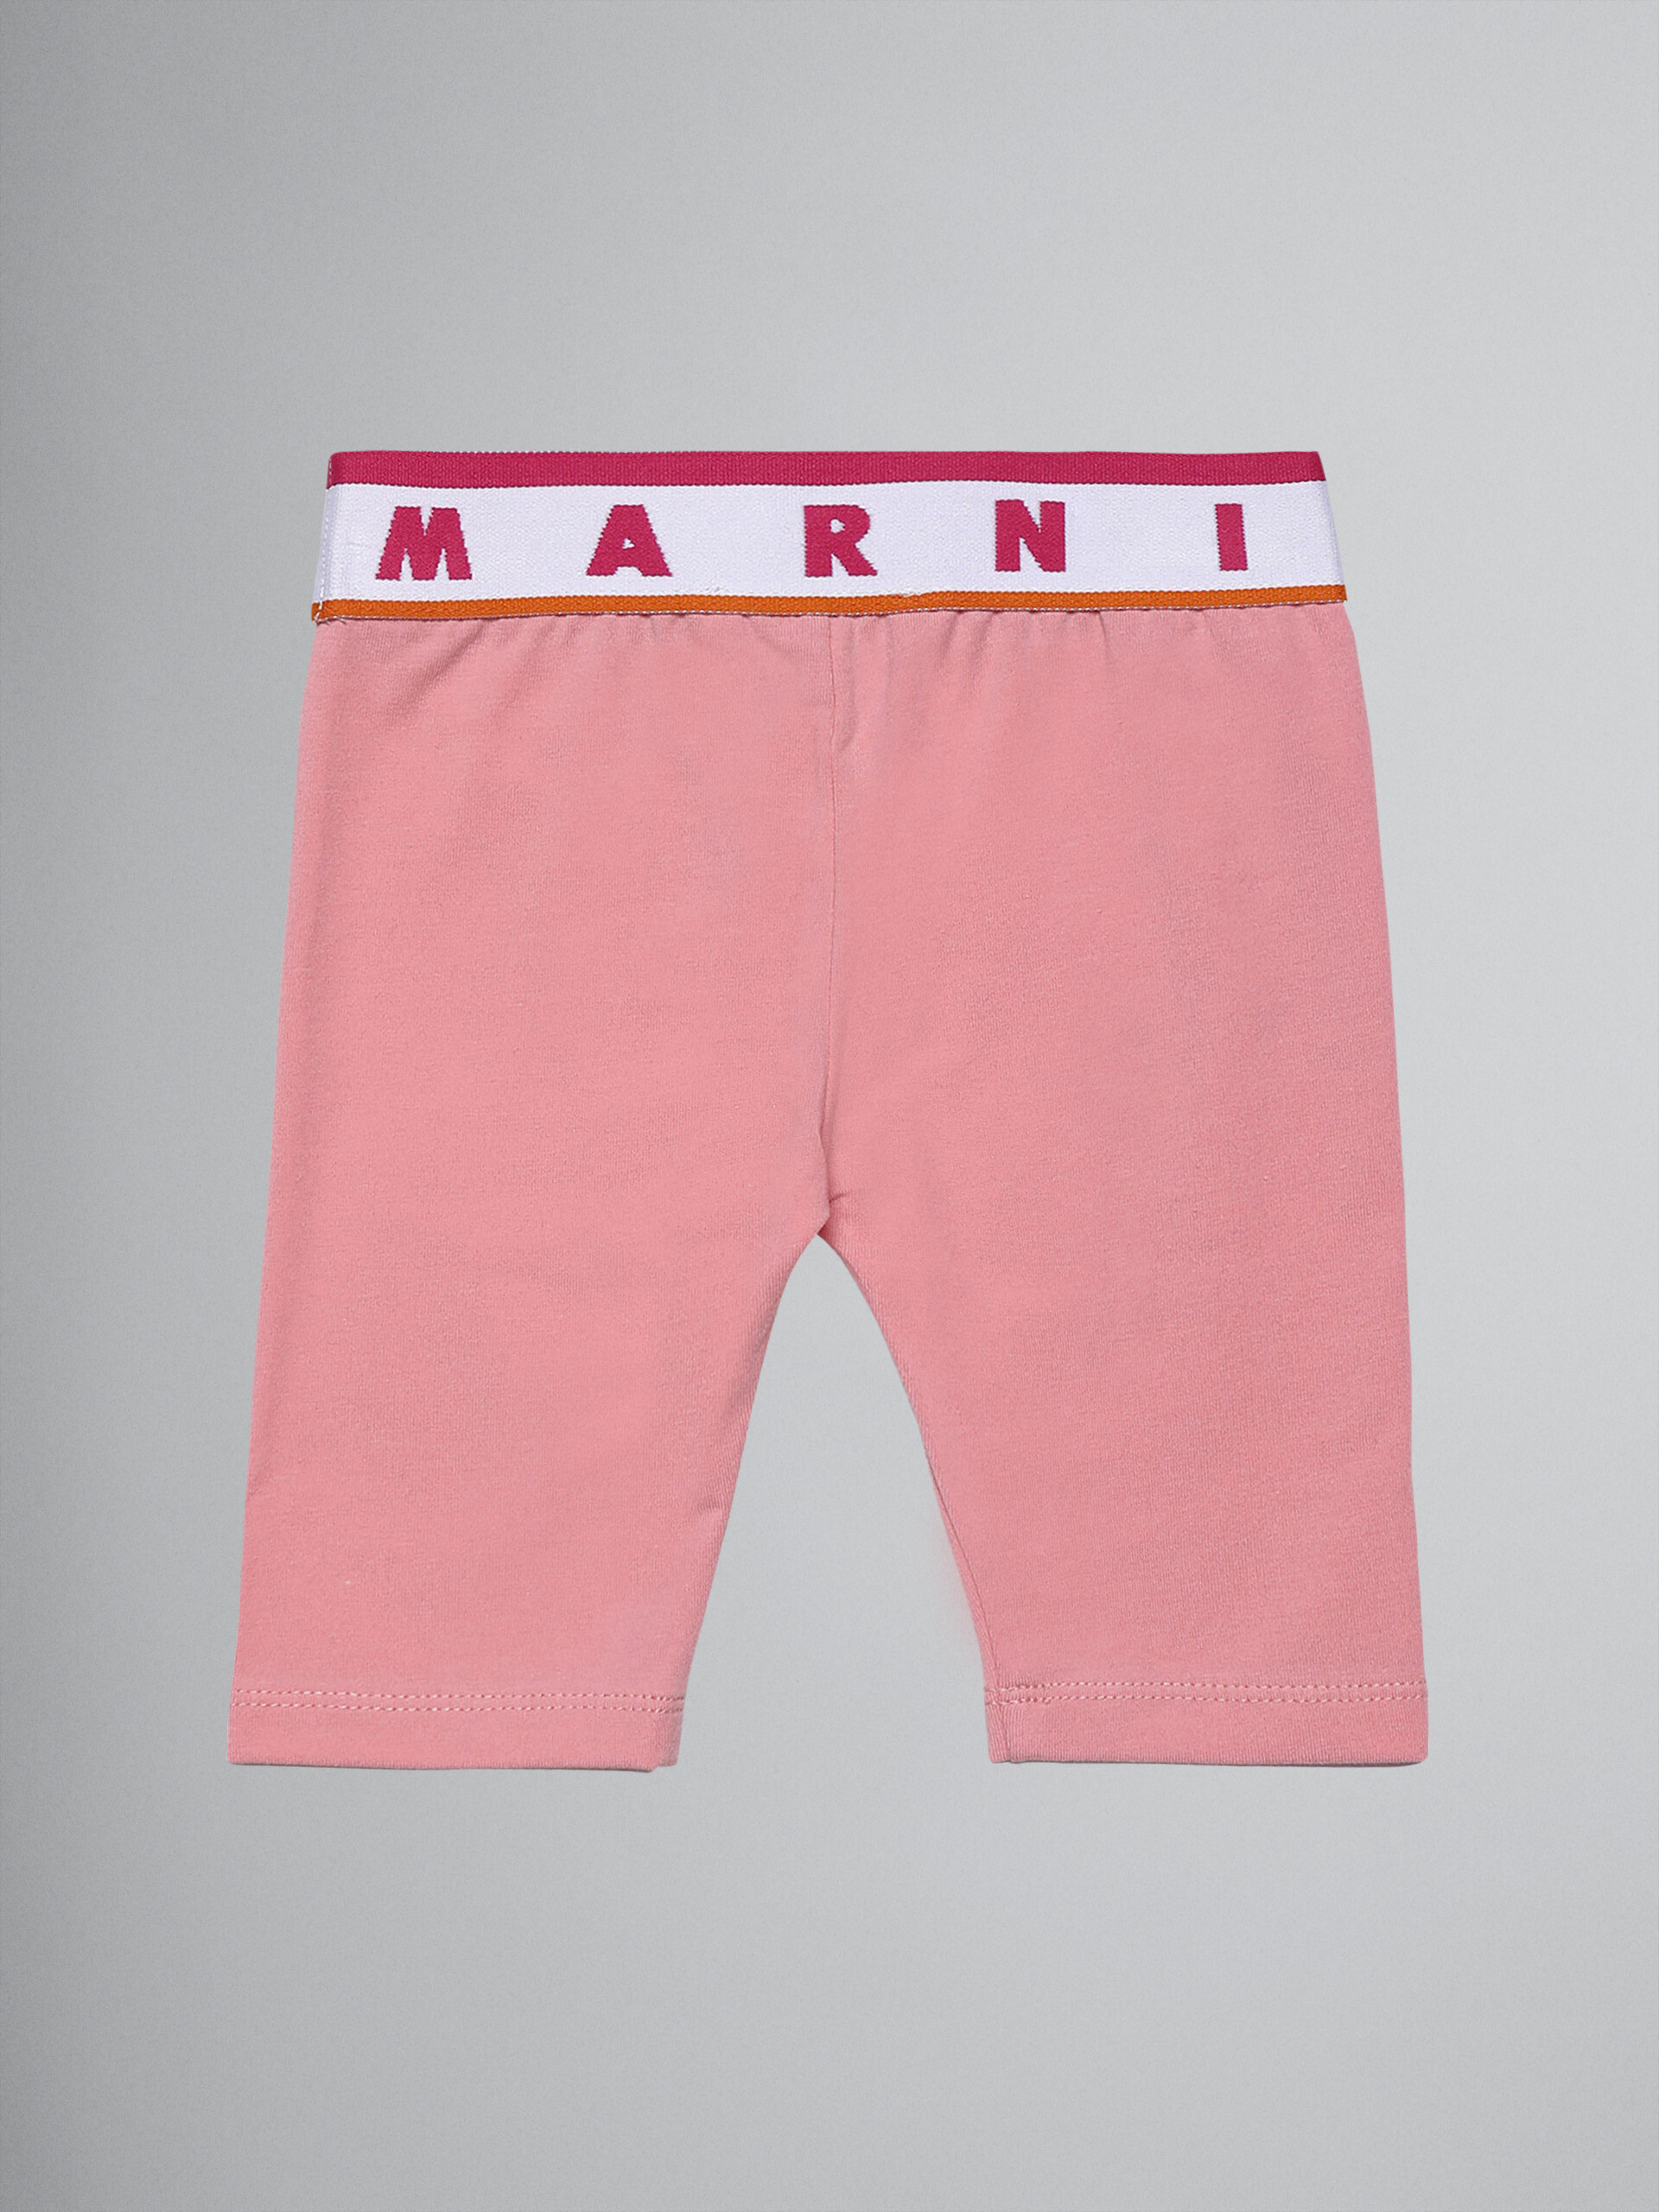 Leggings de jersey elástico rosa con logotipo - Pantalones - Image 2